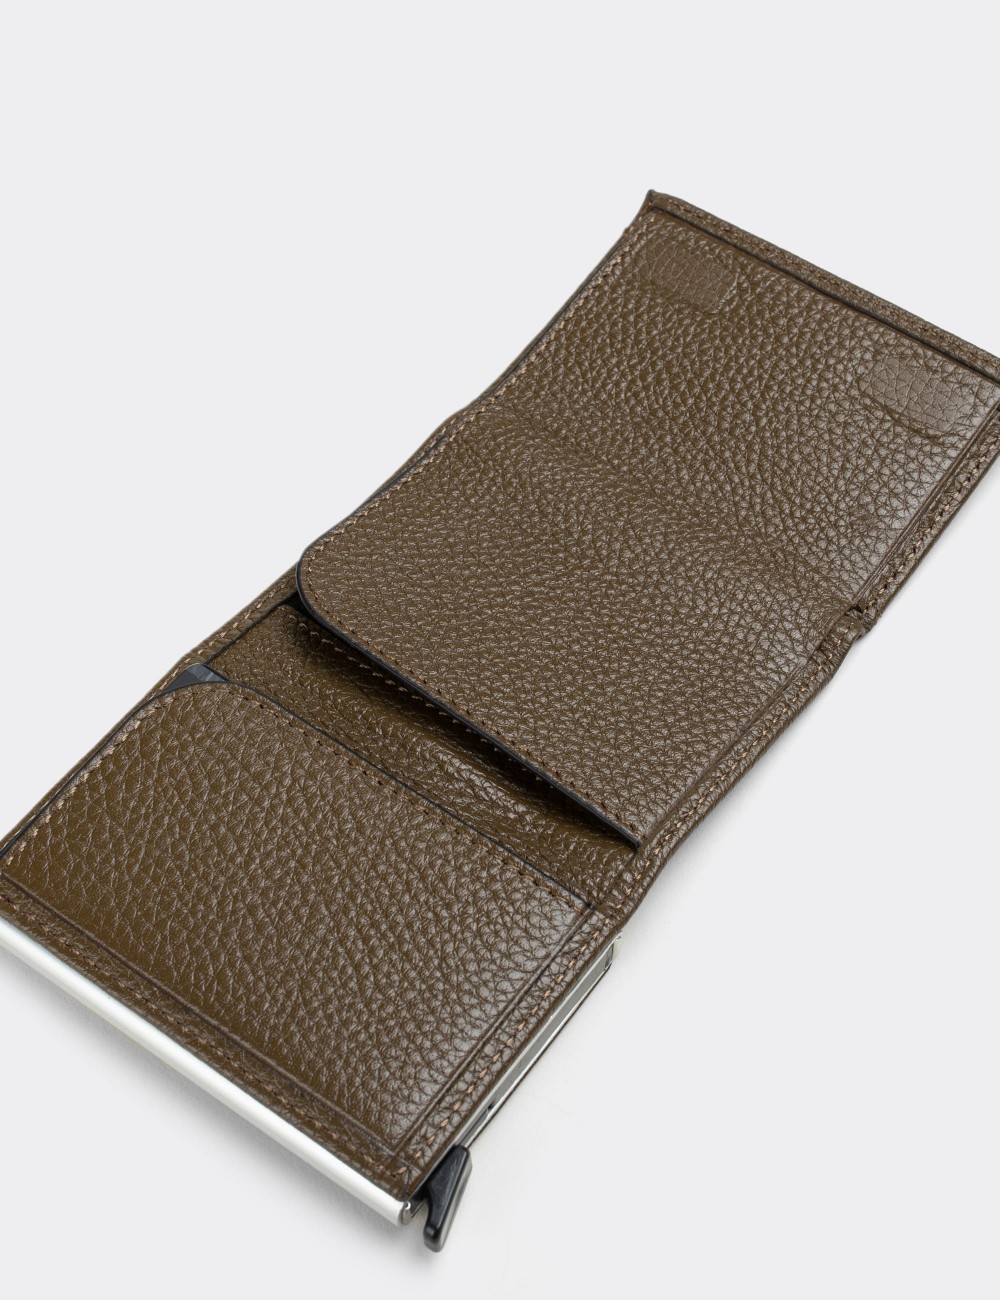  Leather Green Men's Wallet - 00632MHAKZ01